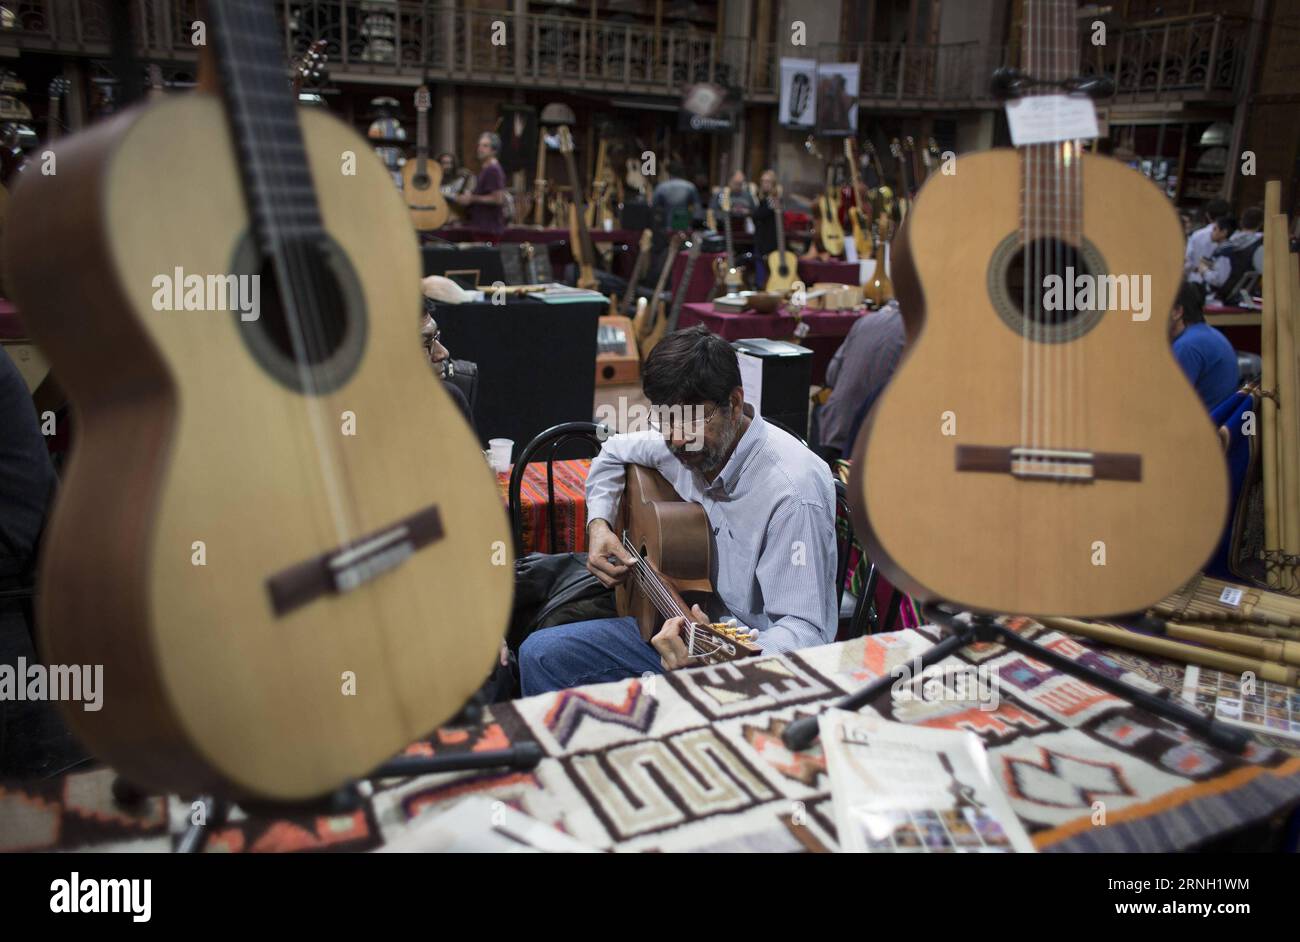 Ein Mann testet eine Gitarre während der Ausstellung Luthiers in Buenos Aires 2016, in Buenos Aires City, Hauptstadt von Argentinien, am 21. Oktober 2016.) (Da)(yy) ARGENTINA-BUENOS AIRES-SOCIETY-EXPOSITION MARTINxZABALA PUBLICATIONxNOTxINxCHN ein Mann testet eine Gitarre während der Exposition Geigenbauer in Buenos Aires 2016 in Buenos Aires City Capital of Argentina AM 21. Oktober 2016 dort y Argentina Buenos Aires Society Exposure MartinXZabala PUBLICATIONxNOTxINxCHN Stockfoto